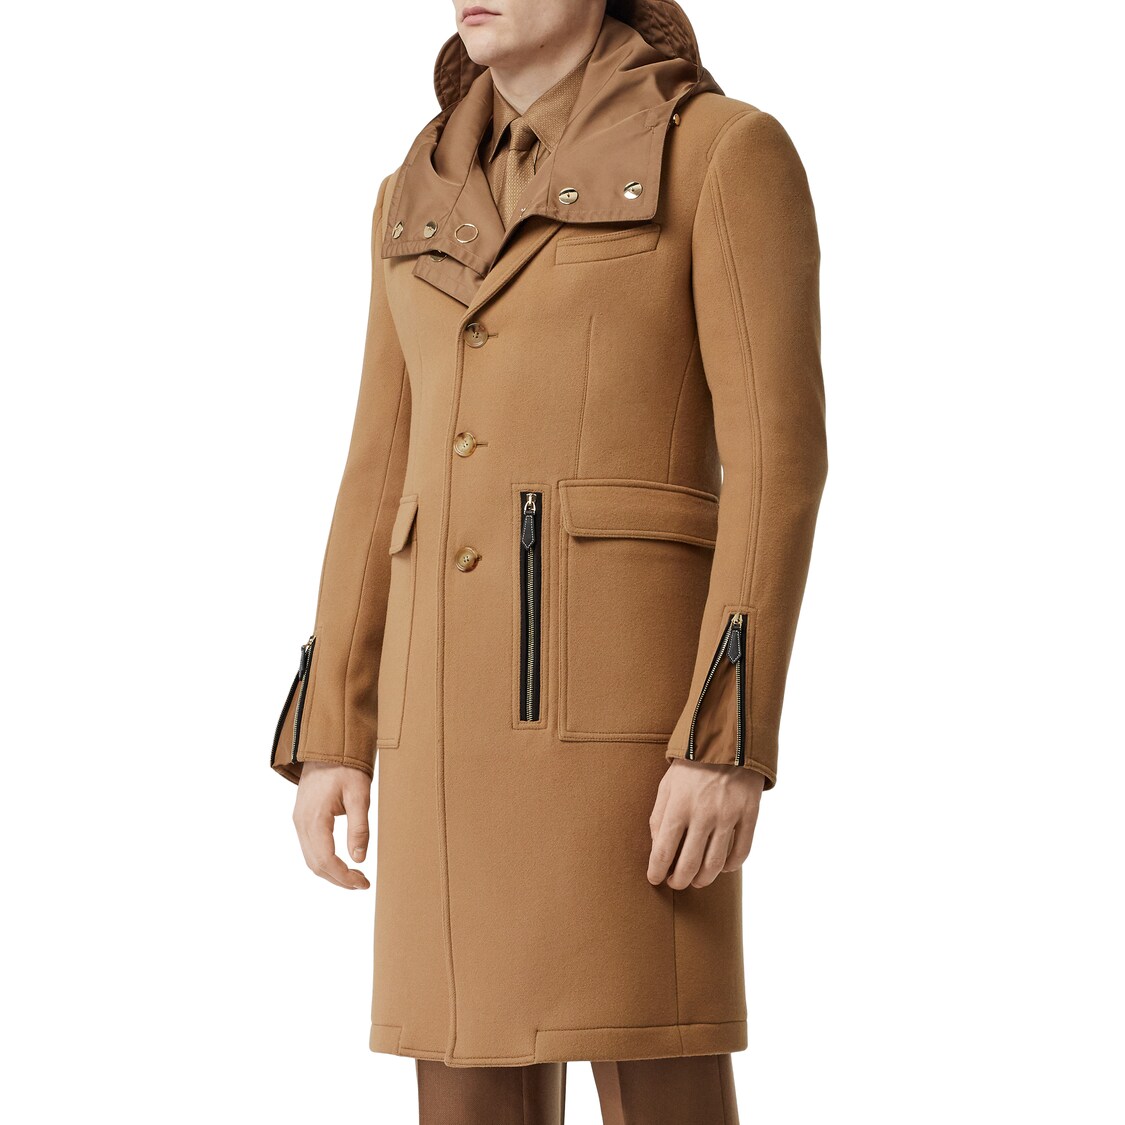 Burberry Wool Coat W/ Zip Details In Warm Camel